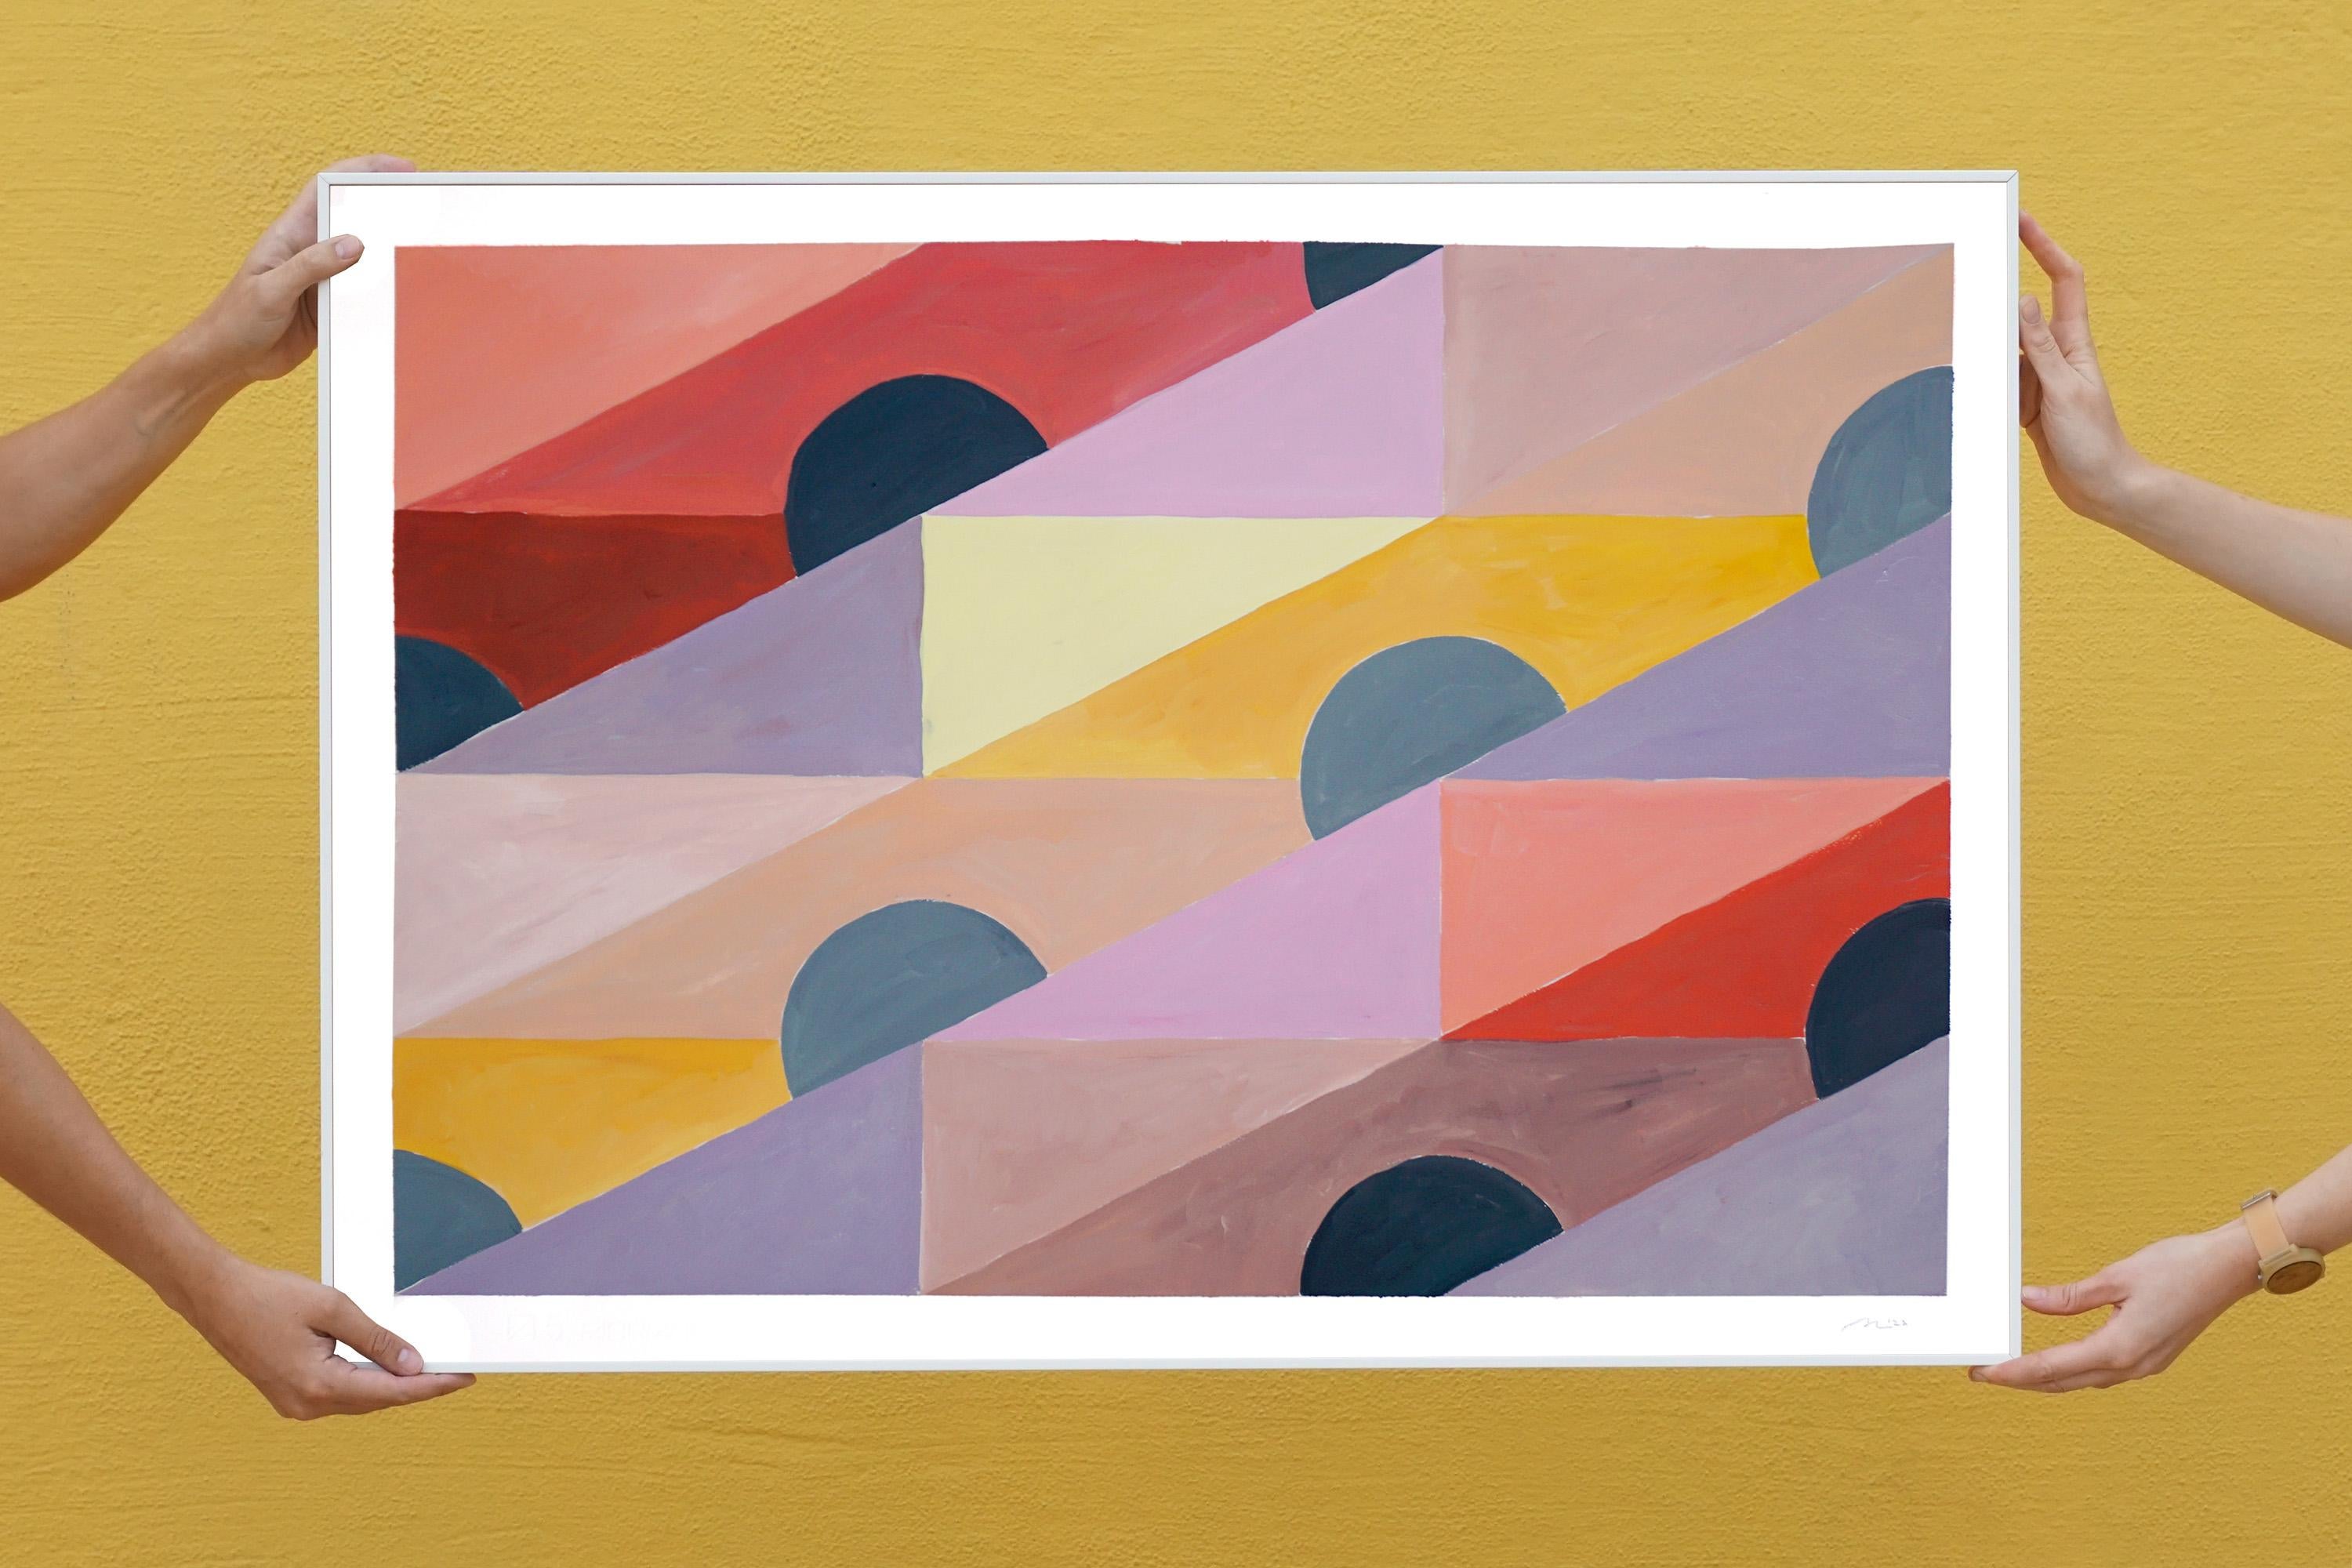 Abend in den Tropen, Miami-Sonnenaufgang-Muster, Geometrisch, Gelb, Grau und Koralle (Geometrische Abstraktion), Painting, von Natalia Roman